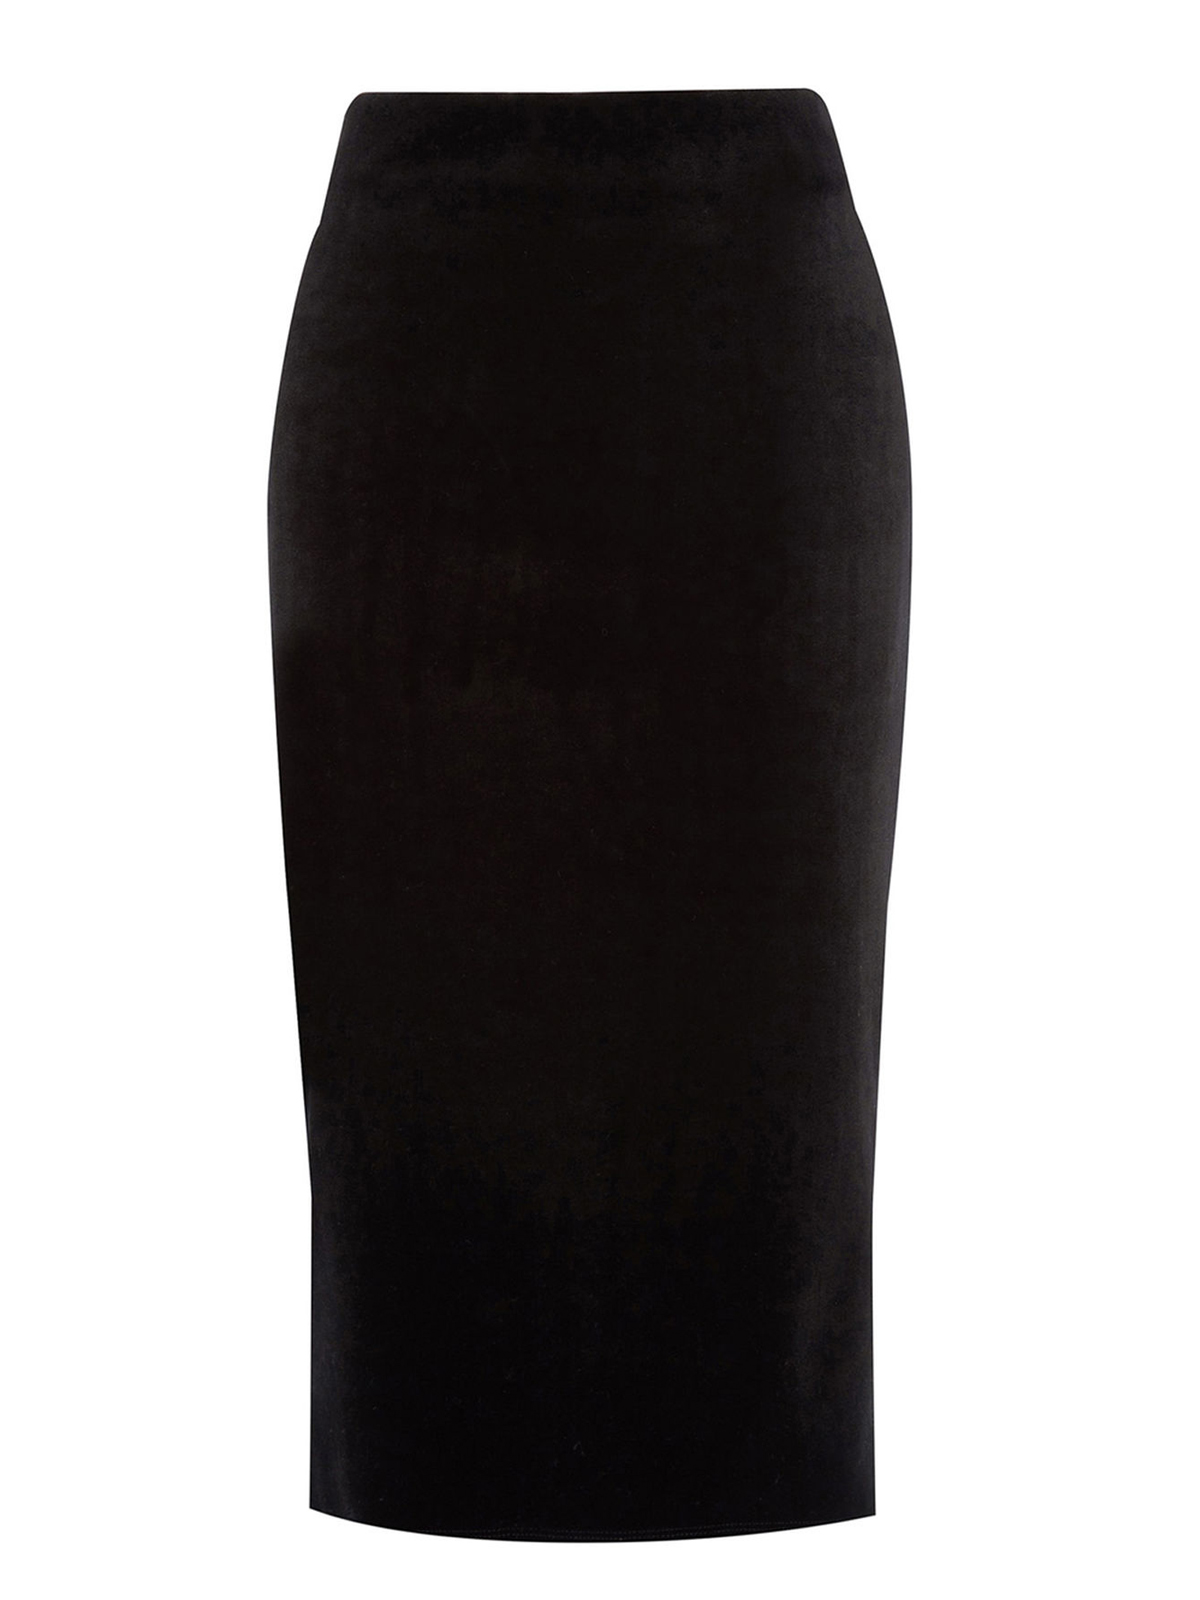 Warehouse - - W4rehouse BLACK Bonded Velvet Pencil Skirt - Size 6 to 14